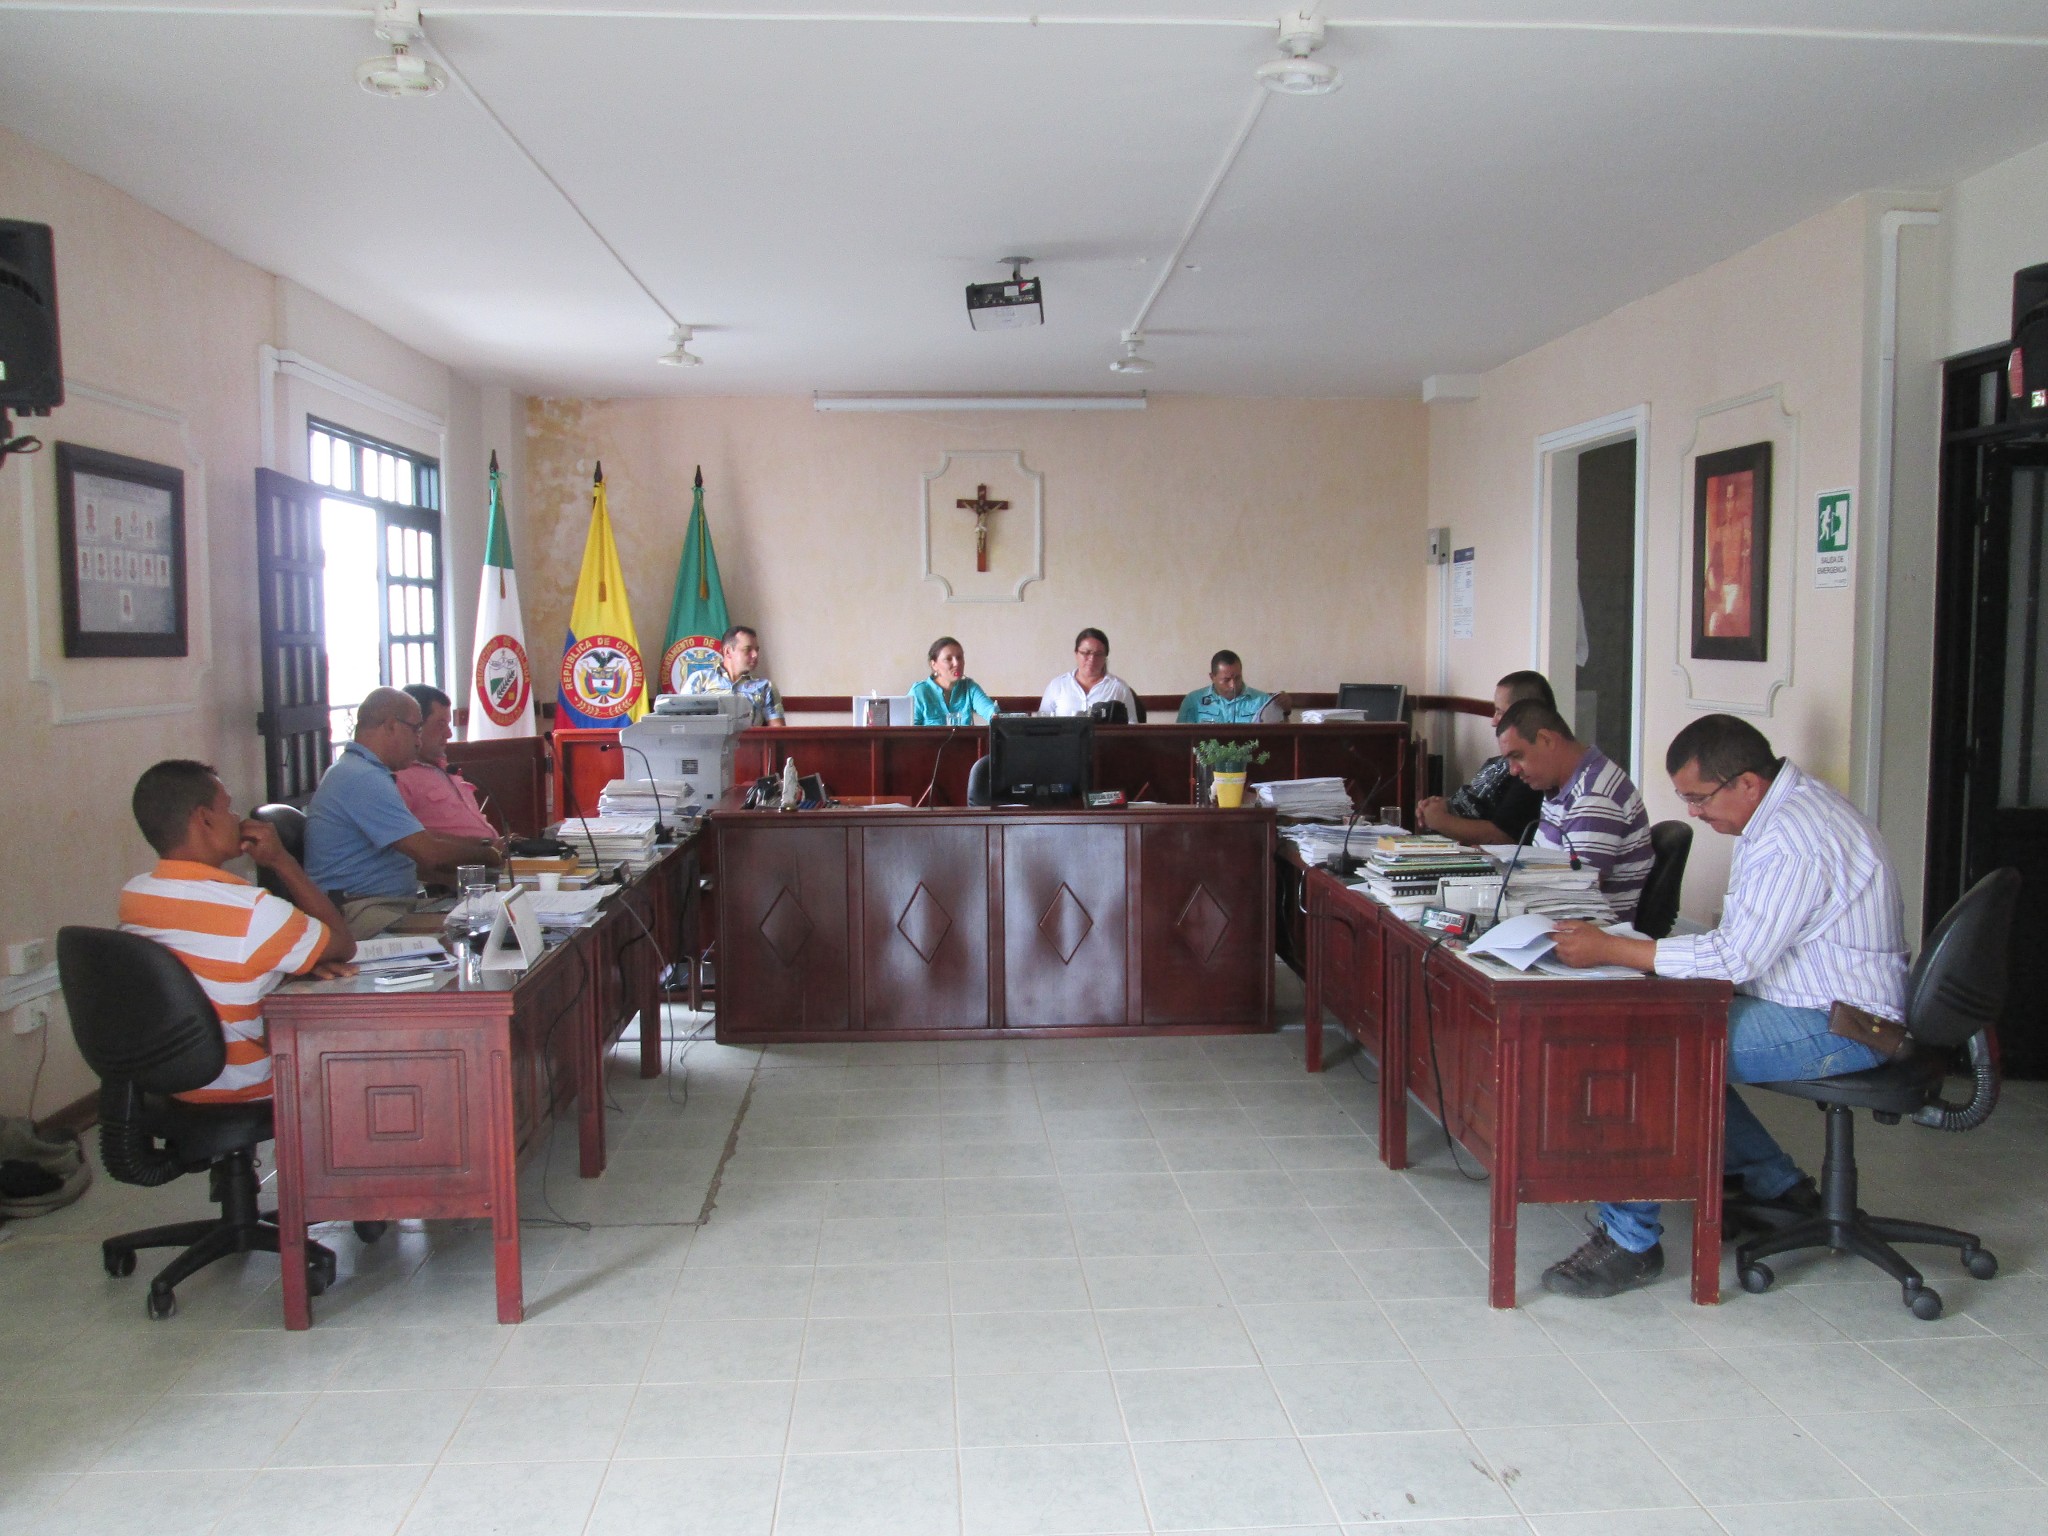 5/08/2014. Socialización de la Reserva en el consejo municipal de Balboa.